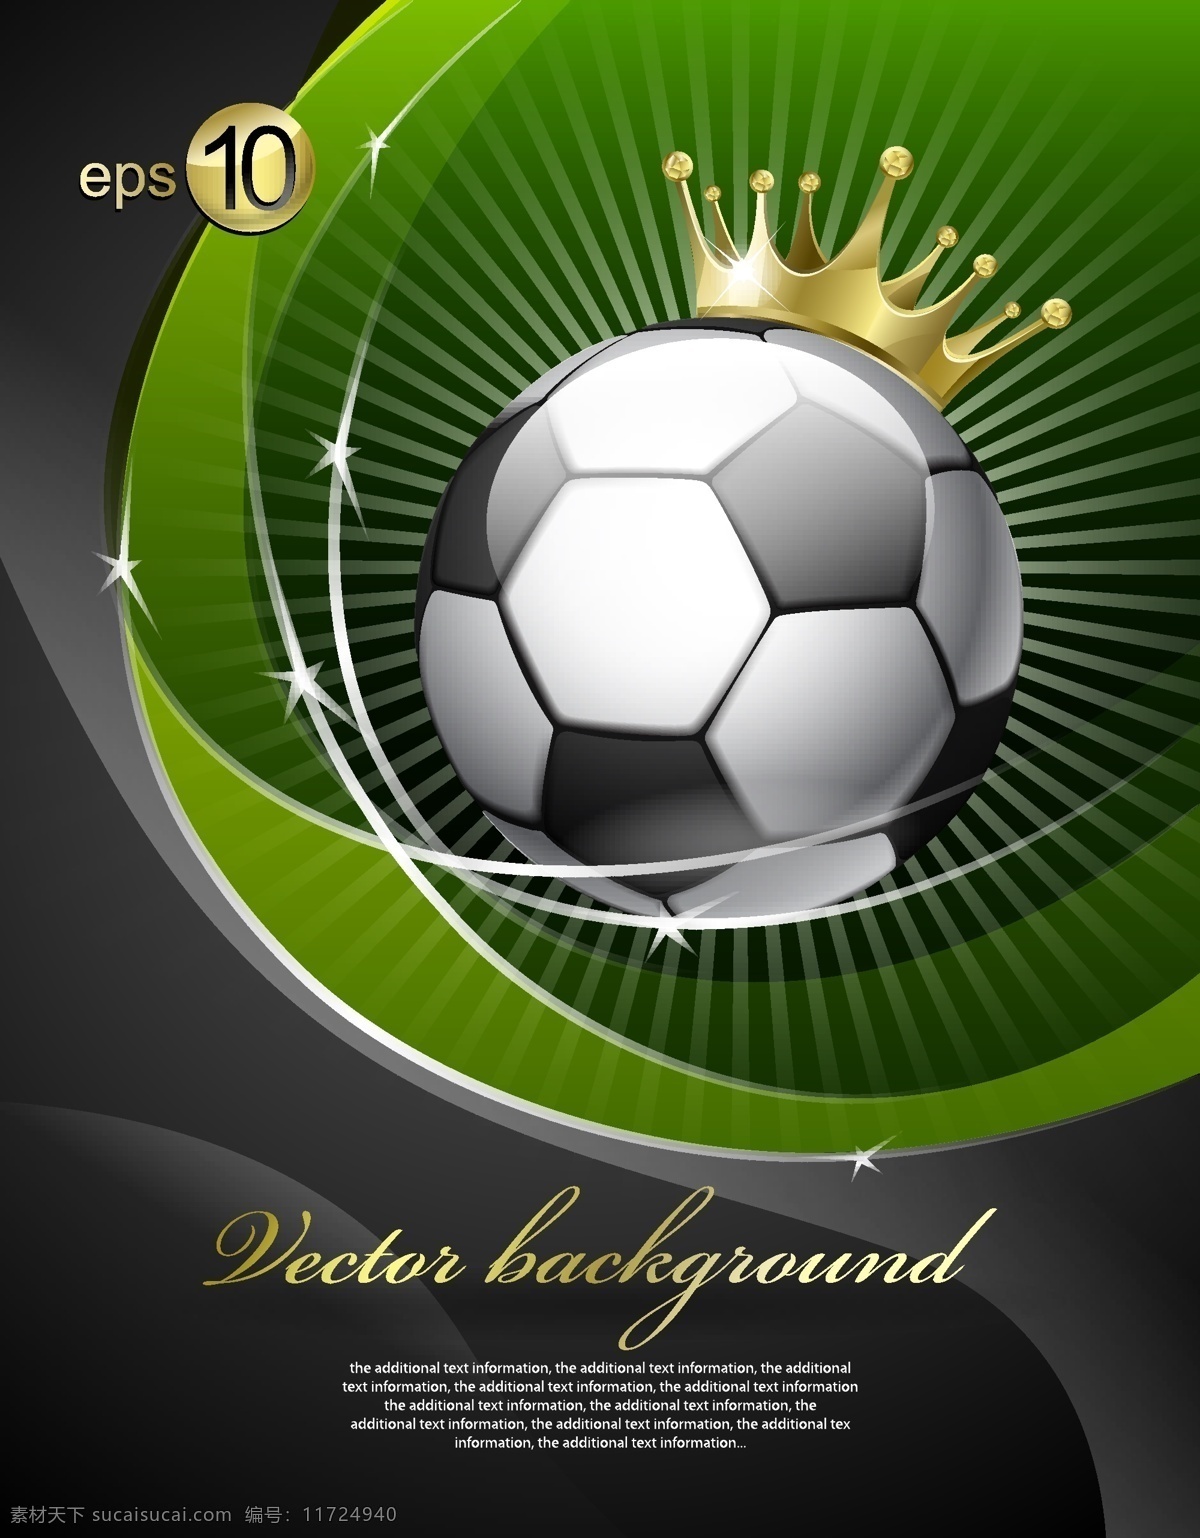 足球 主题 背景 图 矢量图 皇冠主题 背景海报设计 其他矢量图